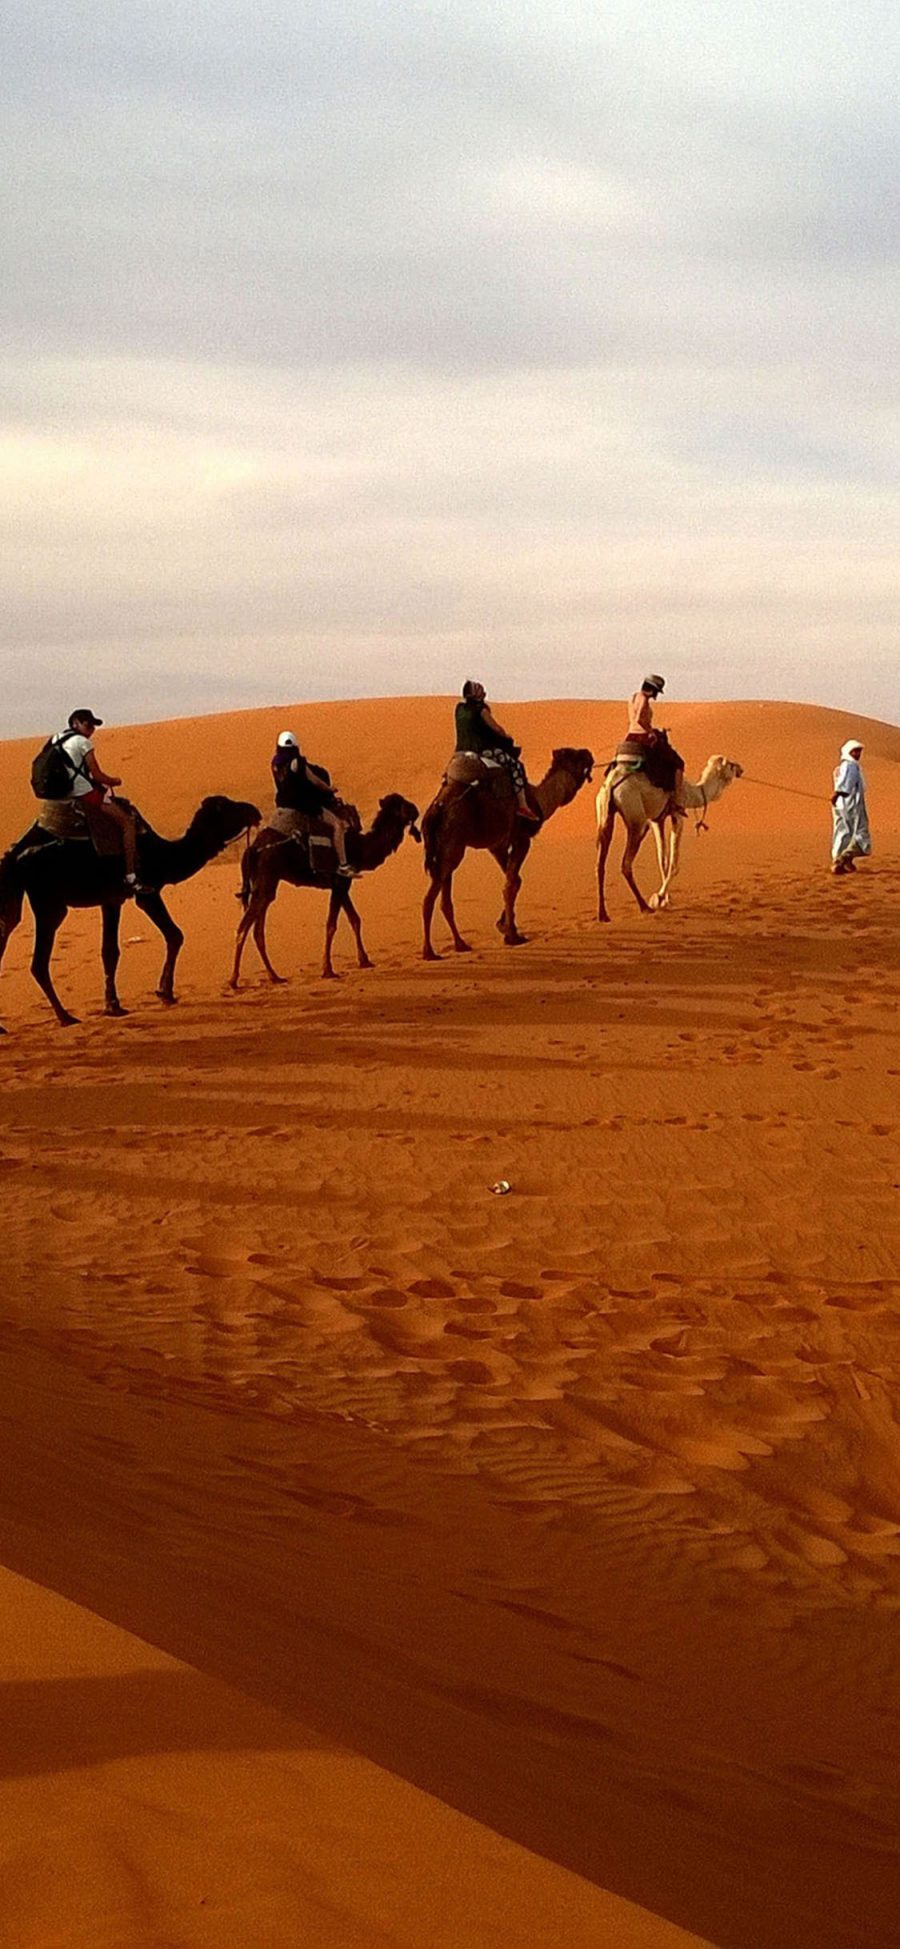 [2436×1125]沙漠中行走的骆驼队 苹果手机壁纸图片